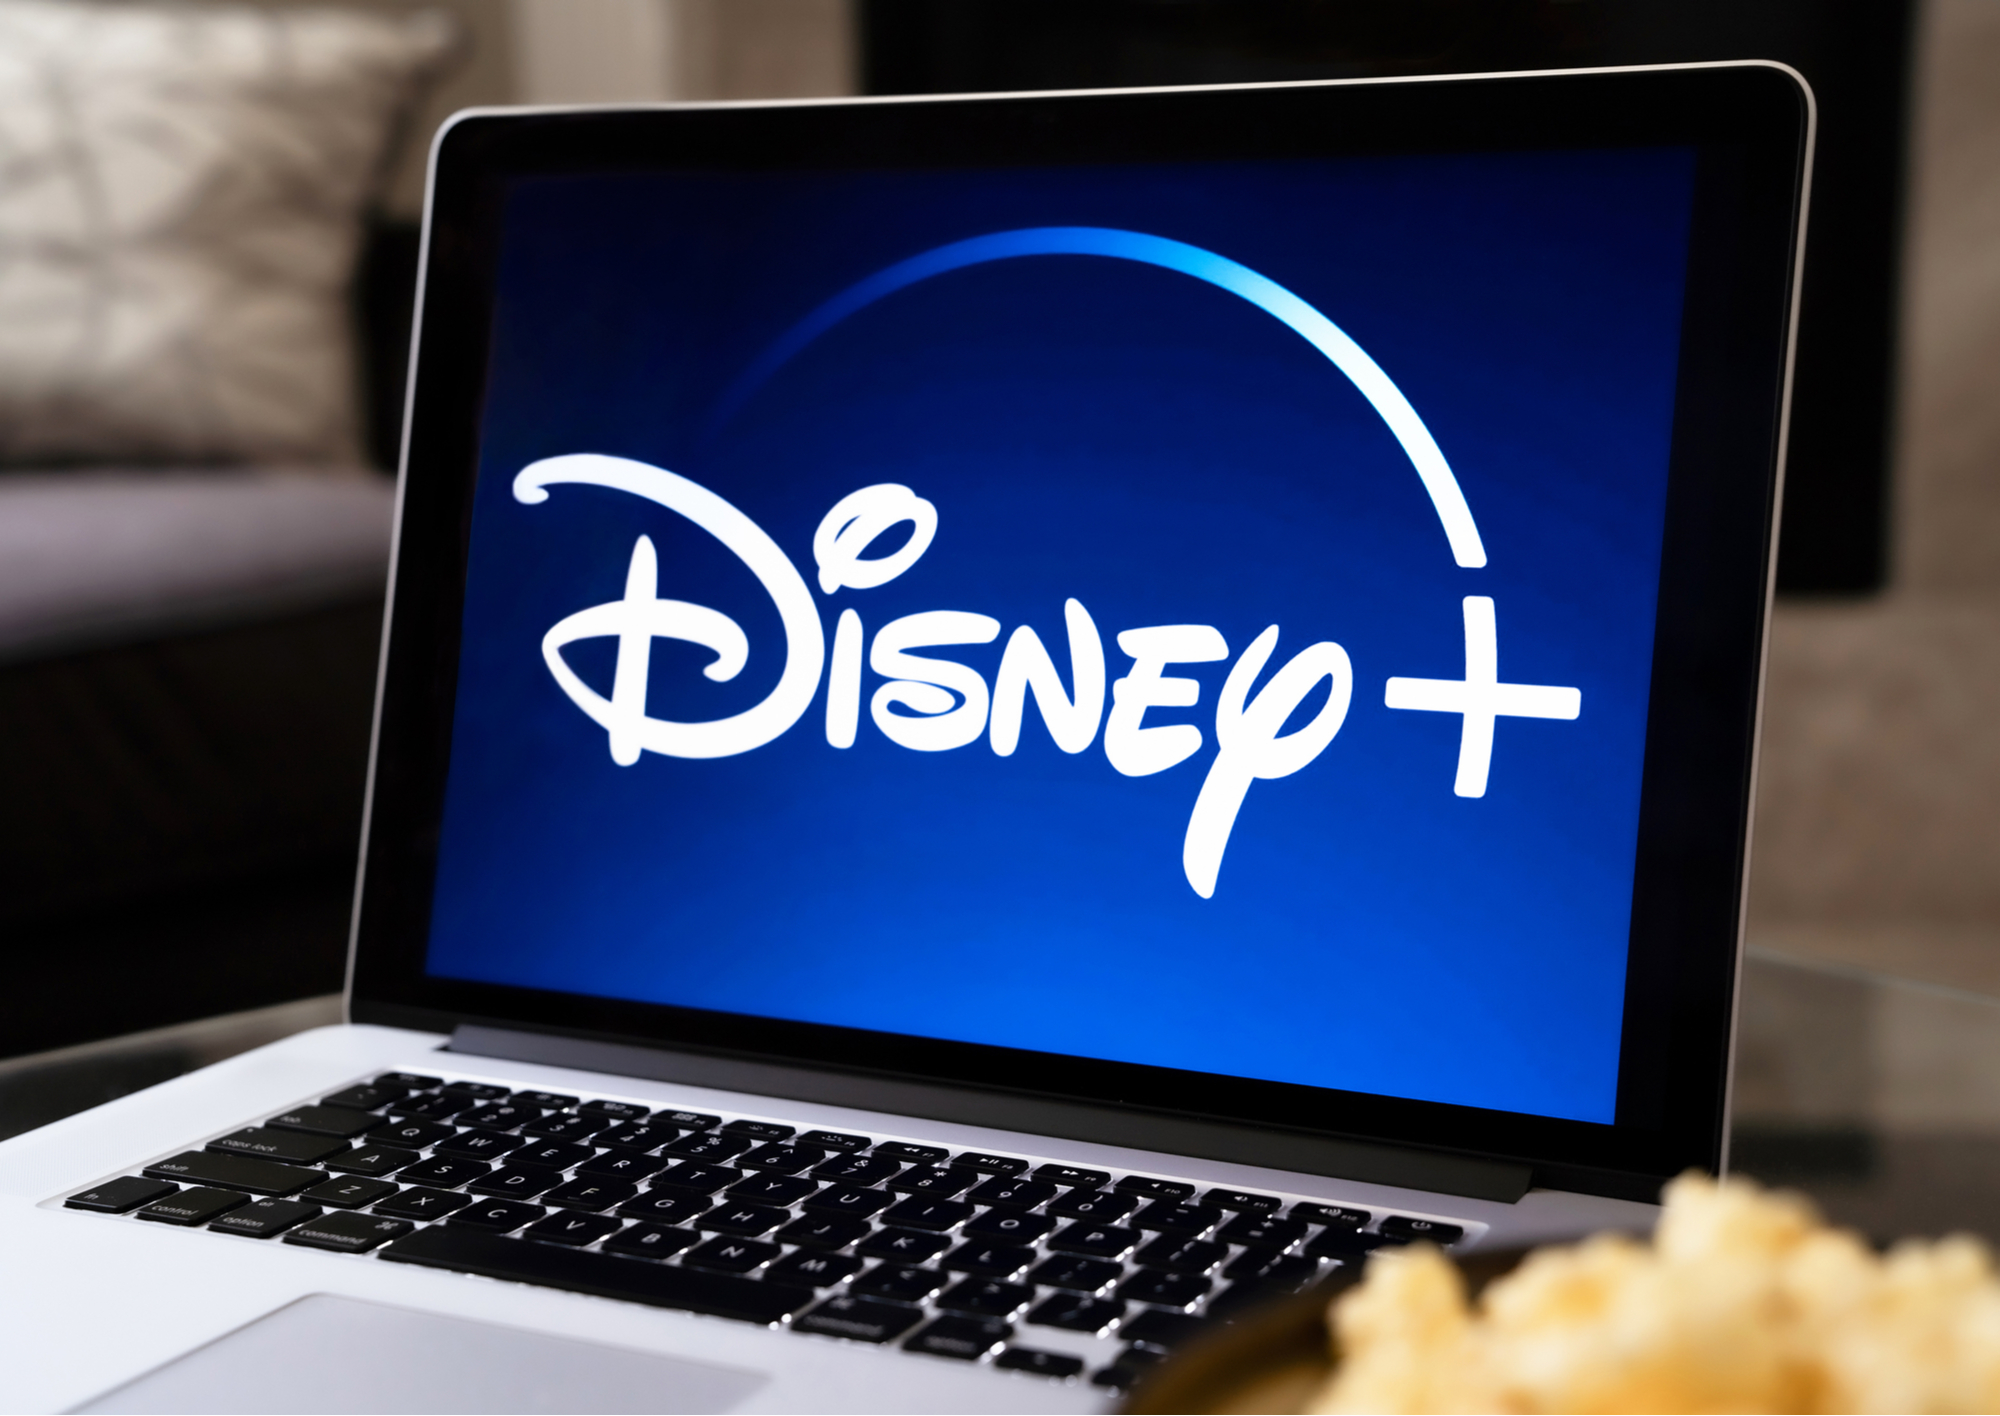 Rien ne l'arrête : Disney+ est aussi l'application la plus téléchargée de la fin 2019 aux Etats-Unis